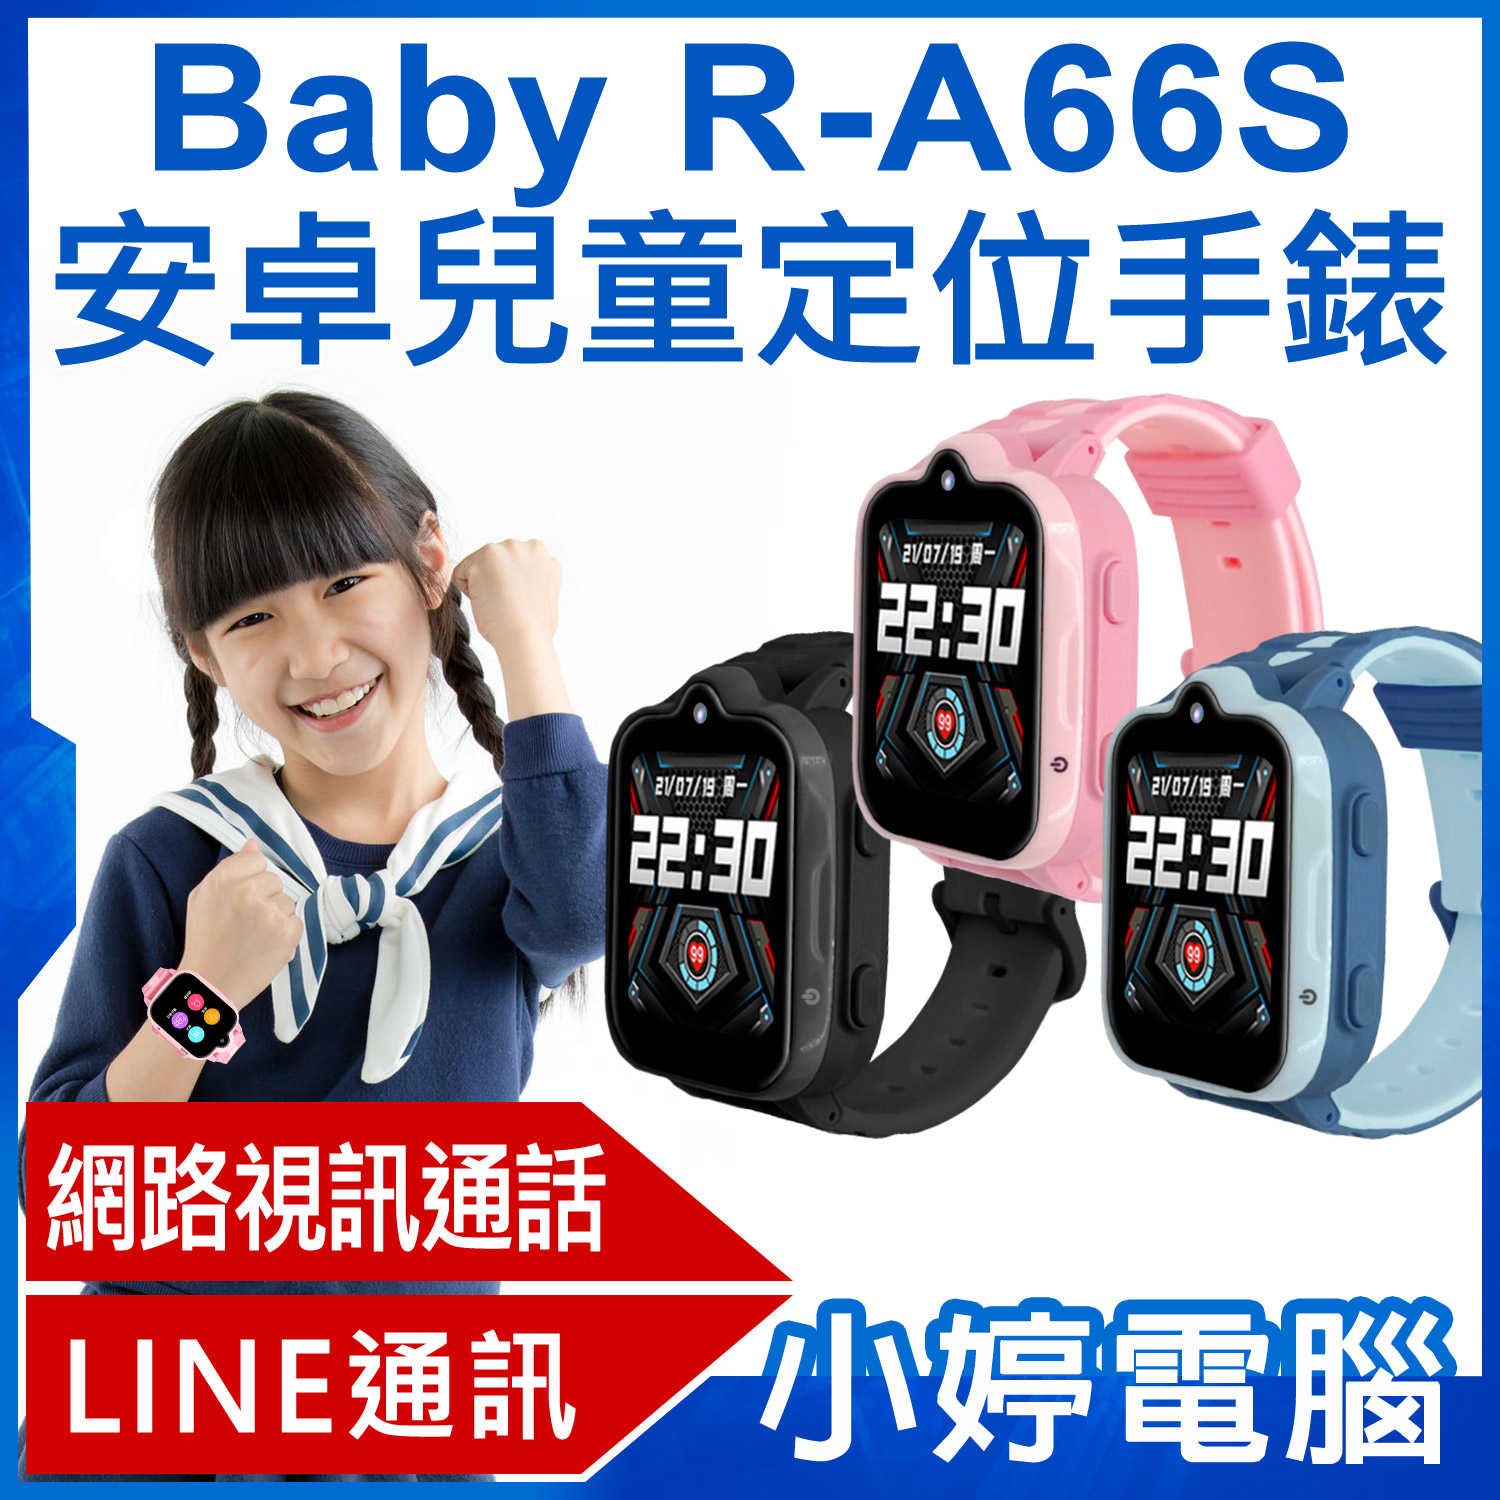 【小婷電腦】Baby R-A66S 安卓兒童定位手錶 LINE通訊 翻譯 IP67防水 精準定位